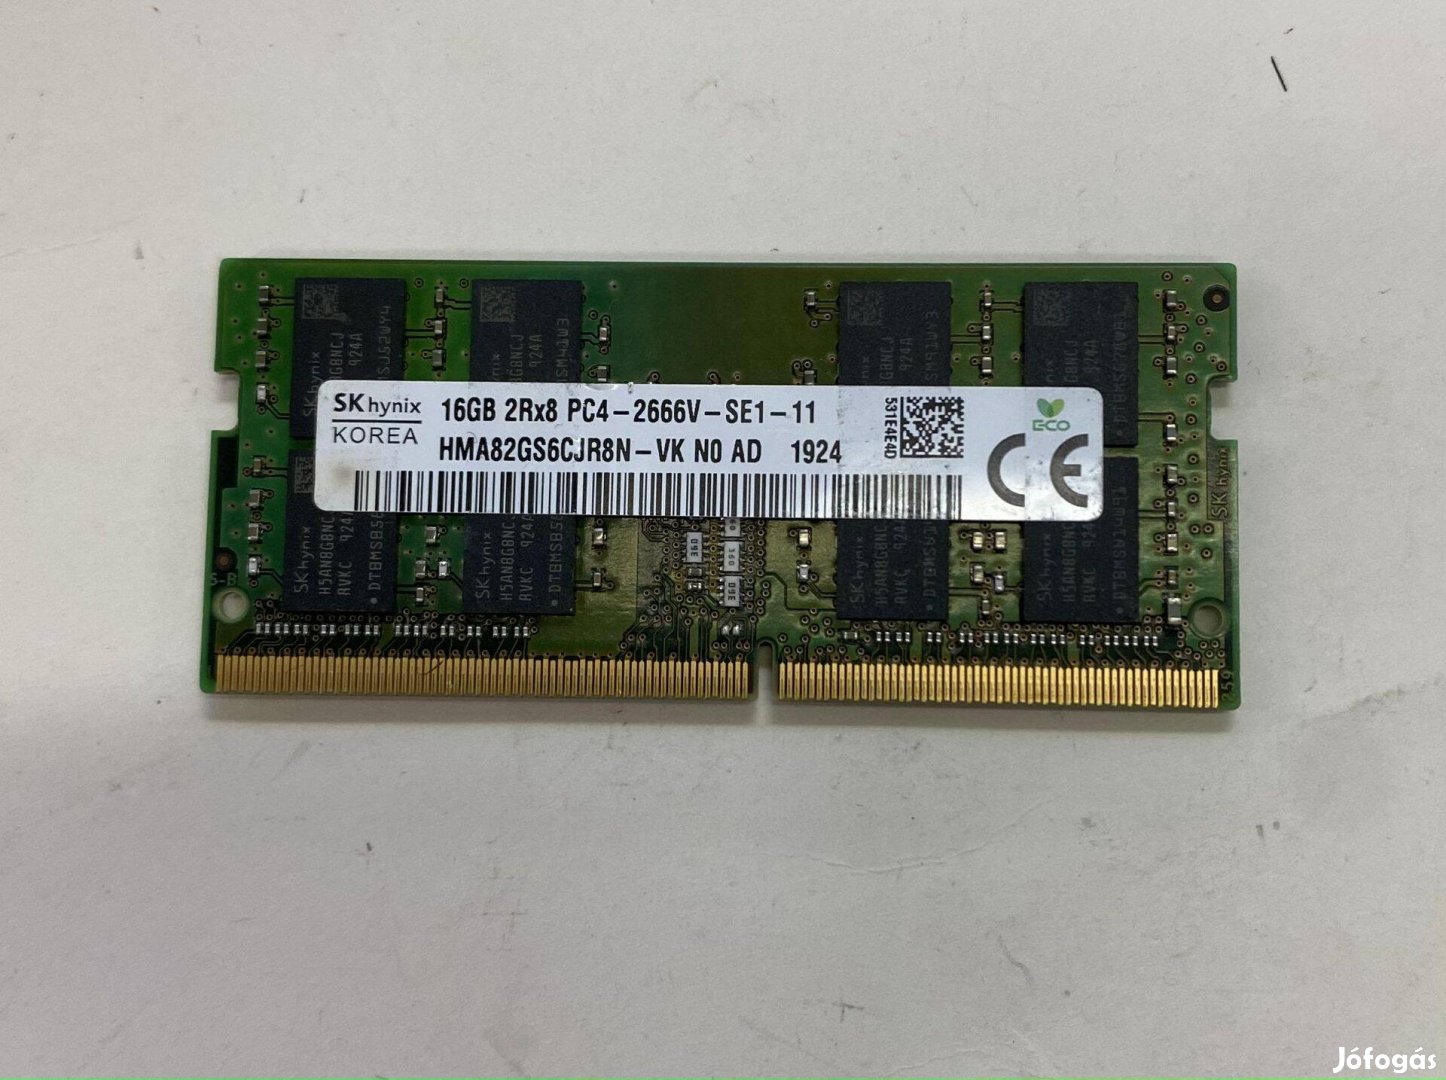 Skhynix DDR4 16GB 2666MHz SO-DIMM